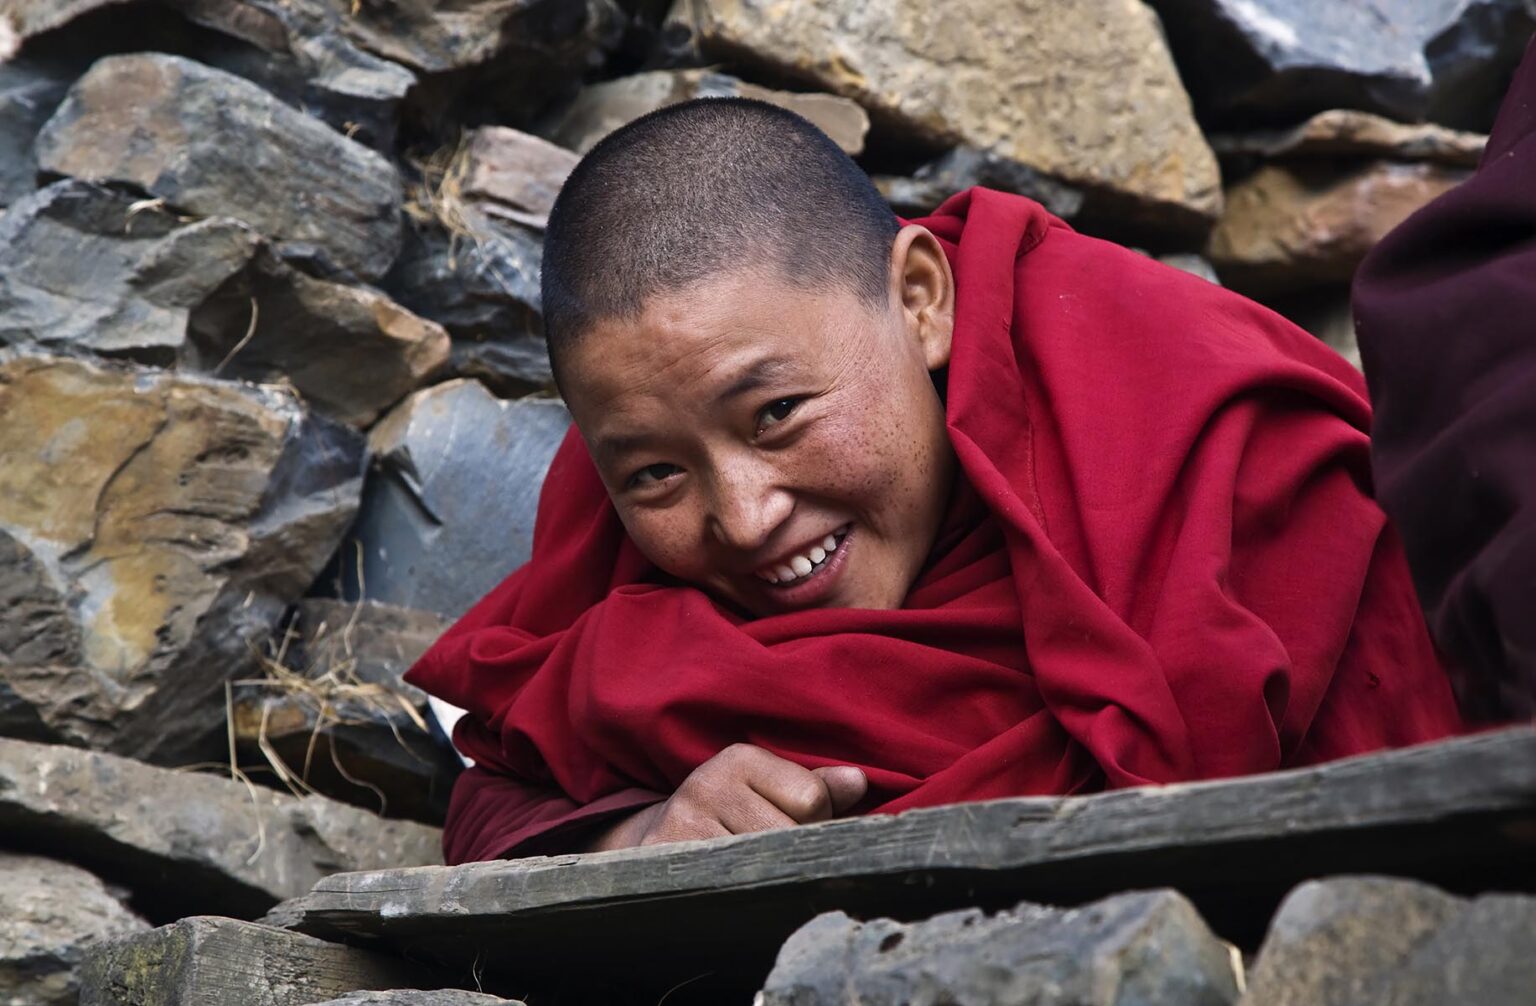 A NUN lives a traditional monastic life studying the dharma at a remote TIBETAN BUDDHIST MONASTERY - NEPAL HIMALALA